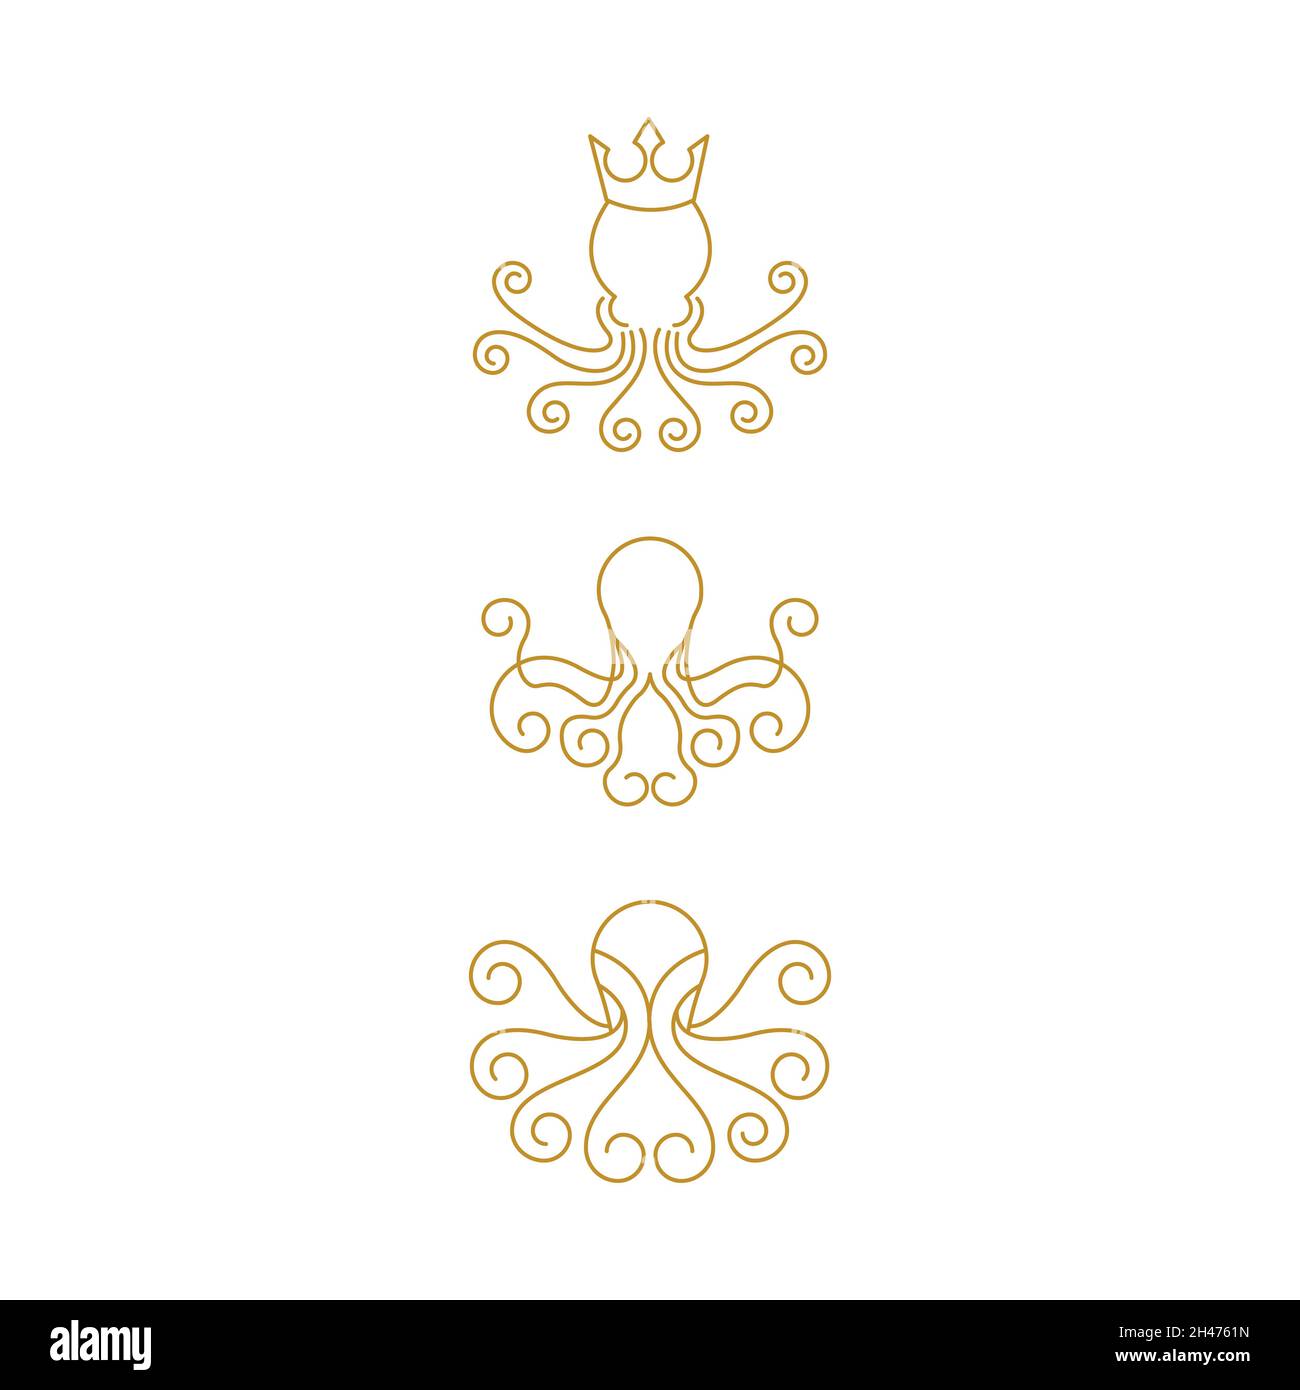 Icône vecteur octopus illustration design template Banque D'Images